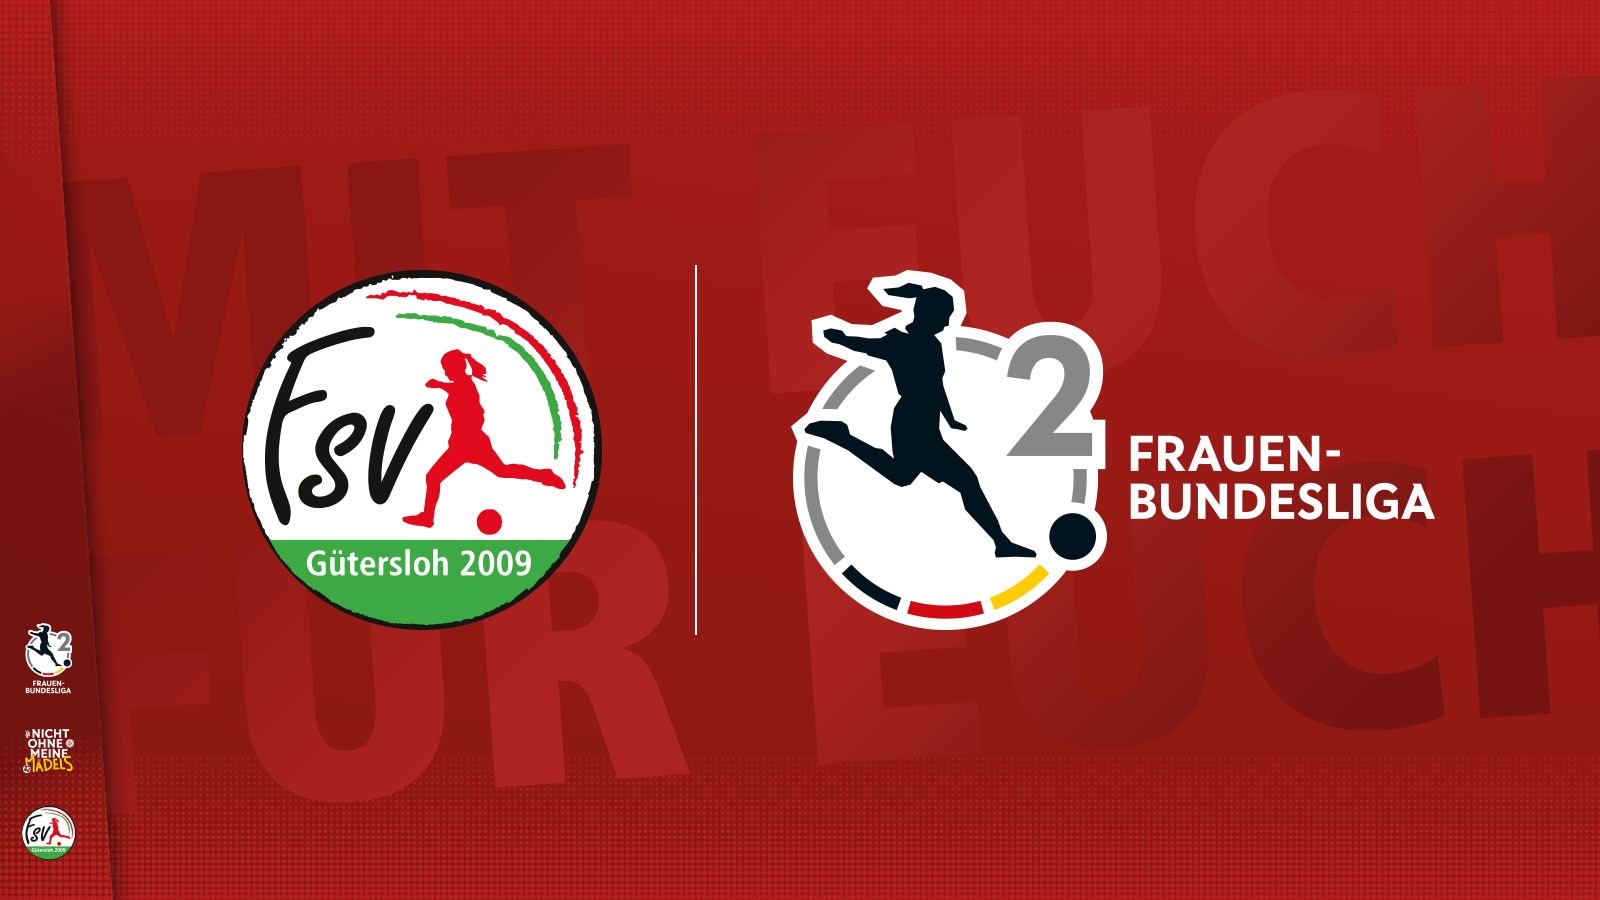 FSV Gütersloh x 2. Frauen-Bundesliga